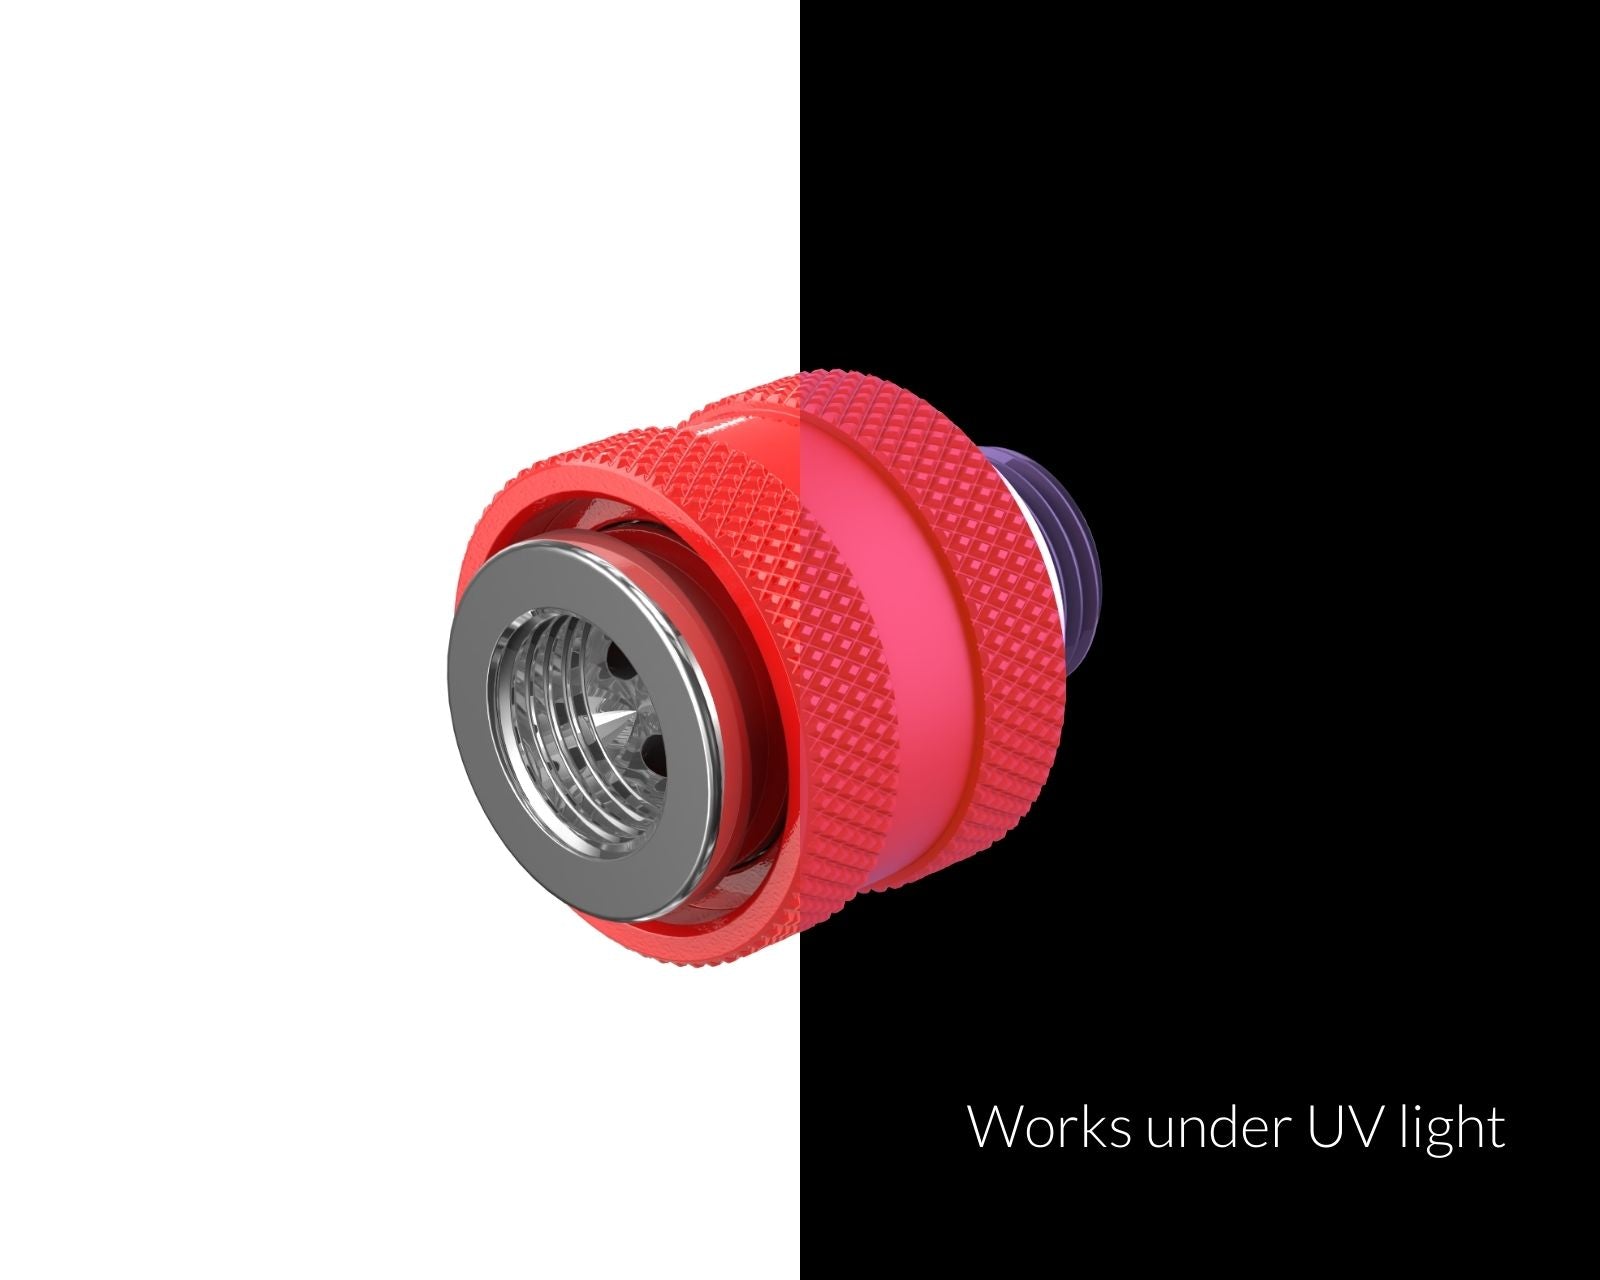 PrimoChill Male to Female G 1/4 SX Mini Pull Drain Valve - UV Red